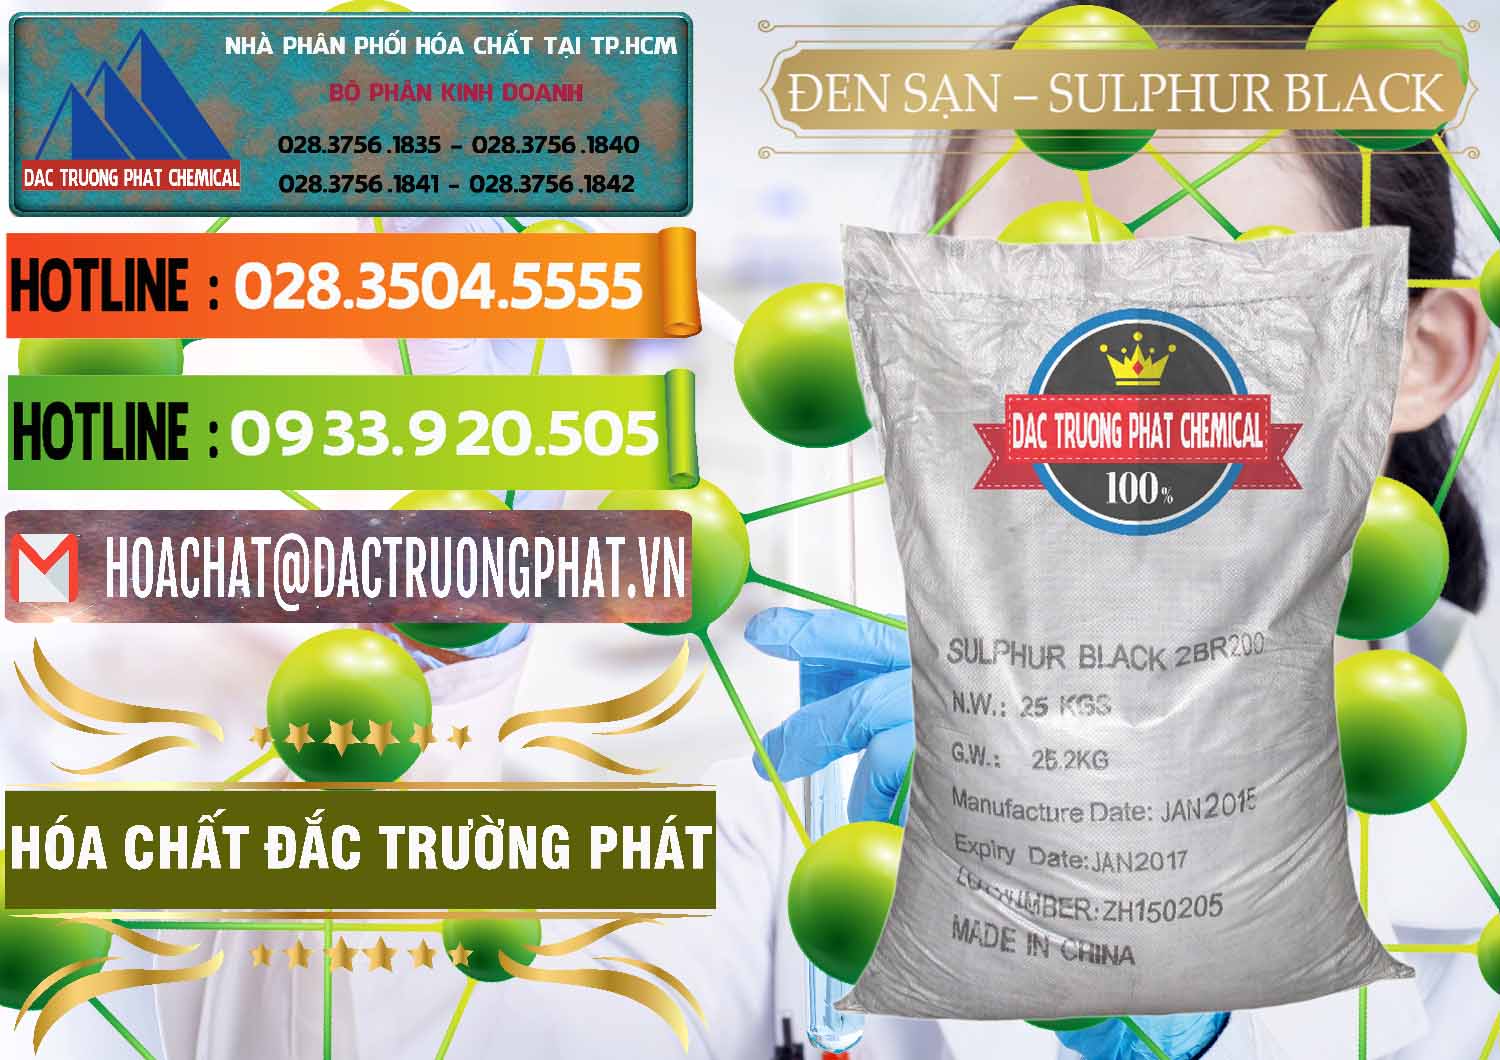 Đơn vị phân phối & bán Đen Sạn – Sulphur Black Trung Quốc China - 0062 - Cty chuyên bán ( phân phối ) hóa chất tại TP.HCM - cungcaphoachat.com.vn